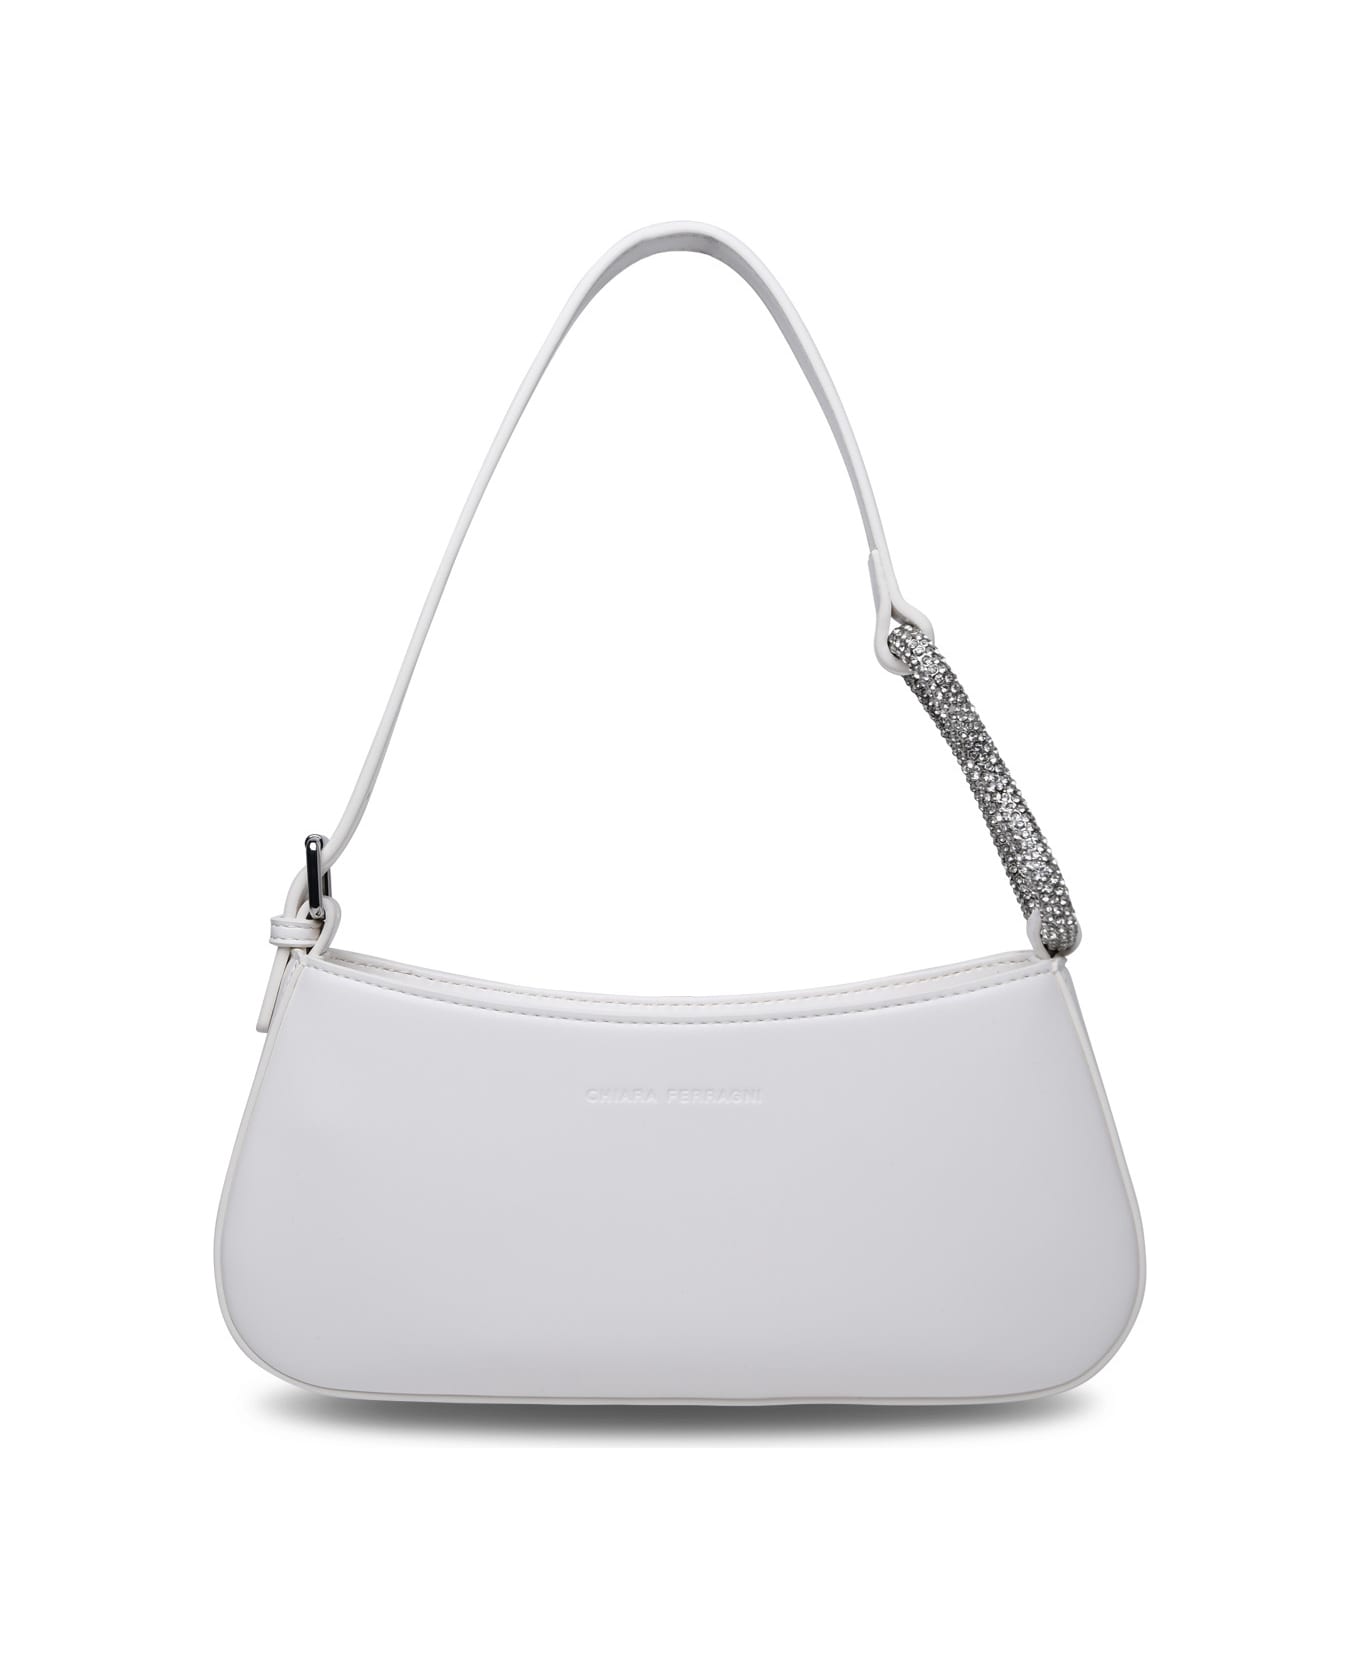 Chiara Ferragni 'cfloop' White Polyester Bag Chiara Ferragni - WHITE トートバッグ